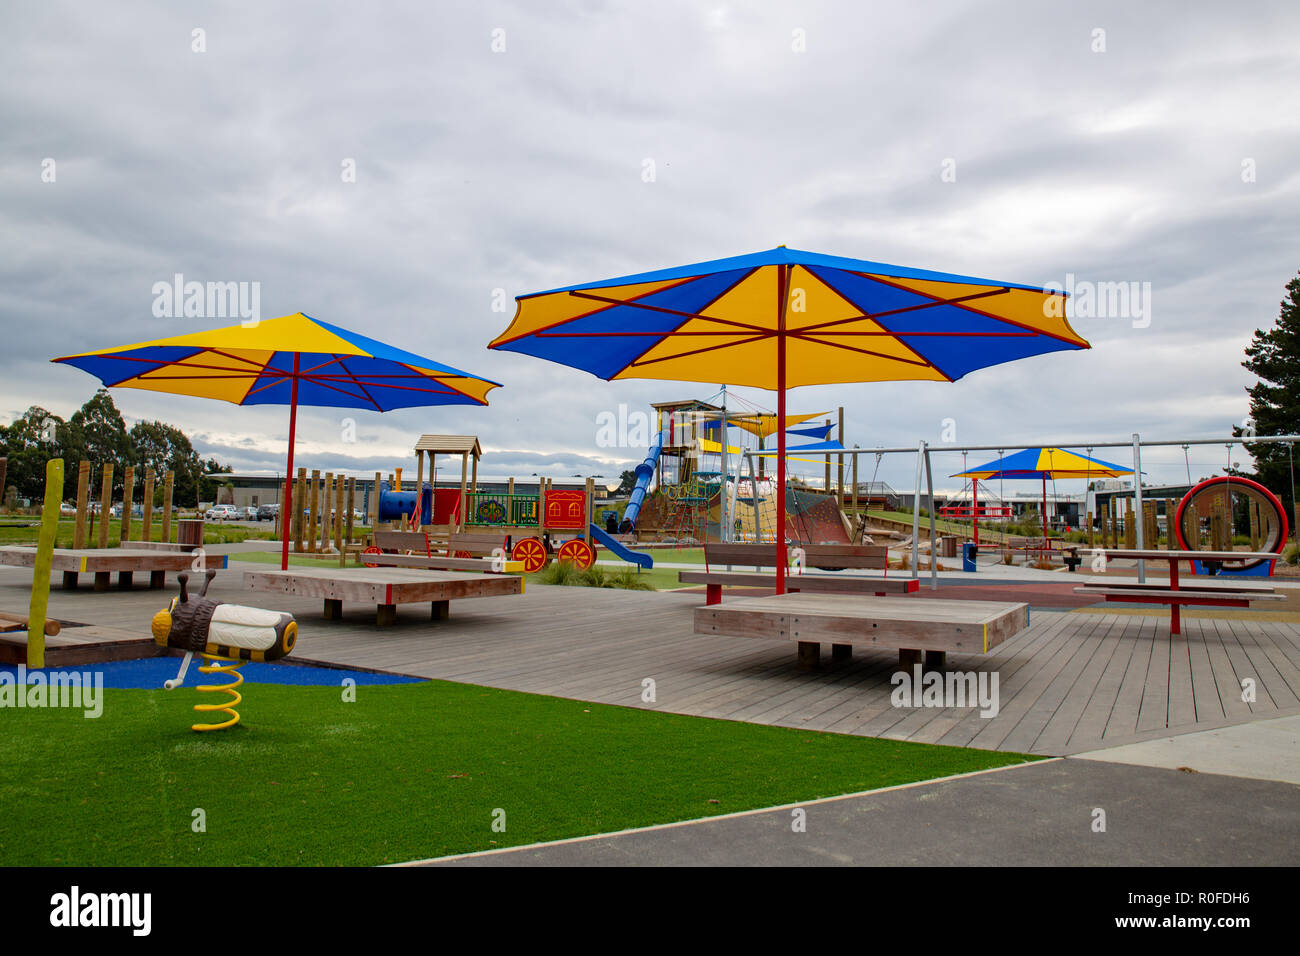 De grands parasols offrent de l'ombre lors d'une aire de jeux pour enfants Banque D'Images